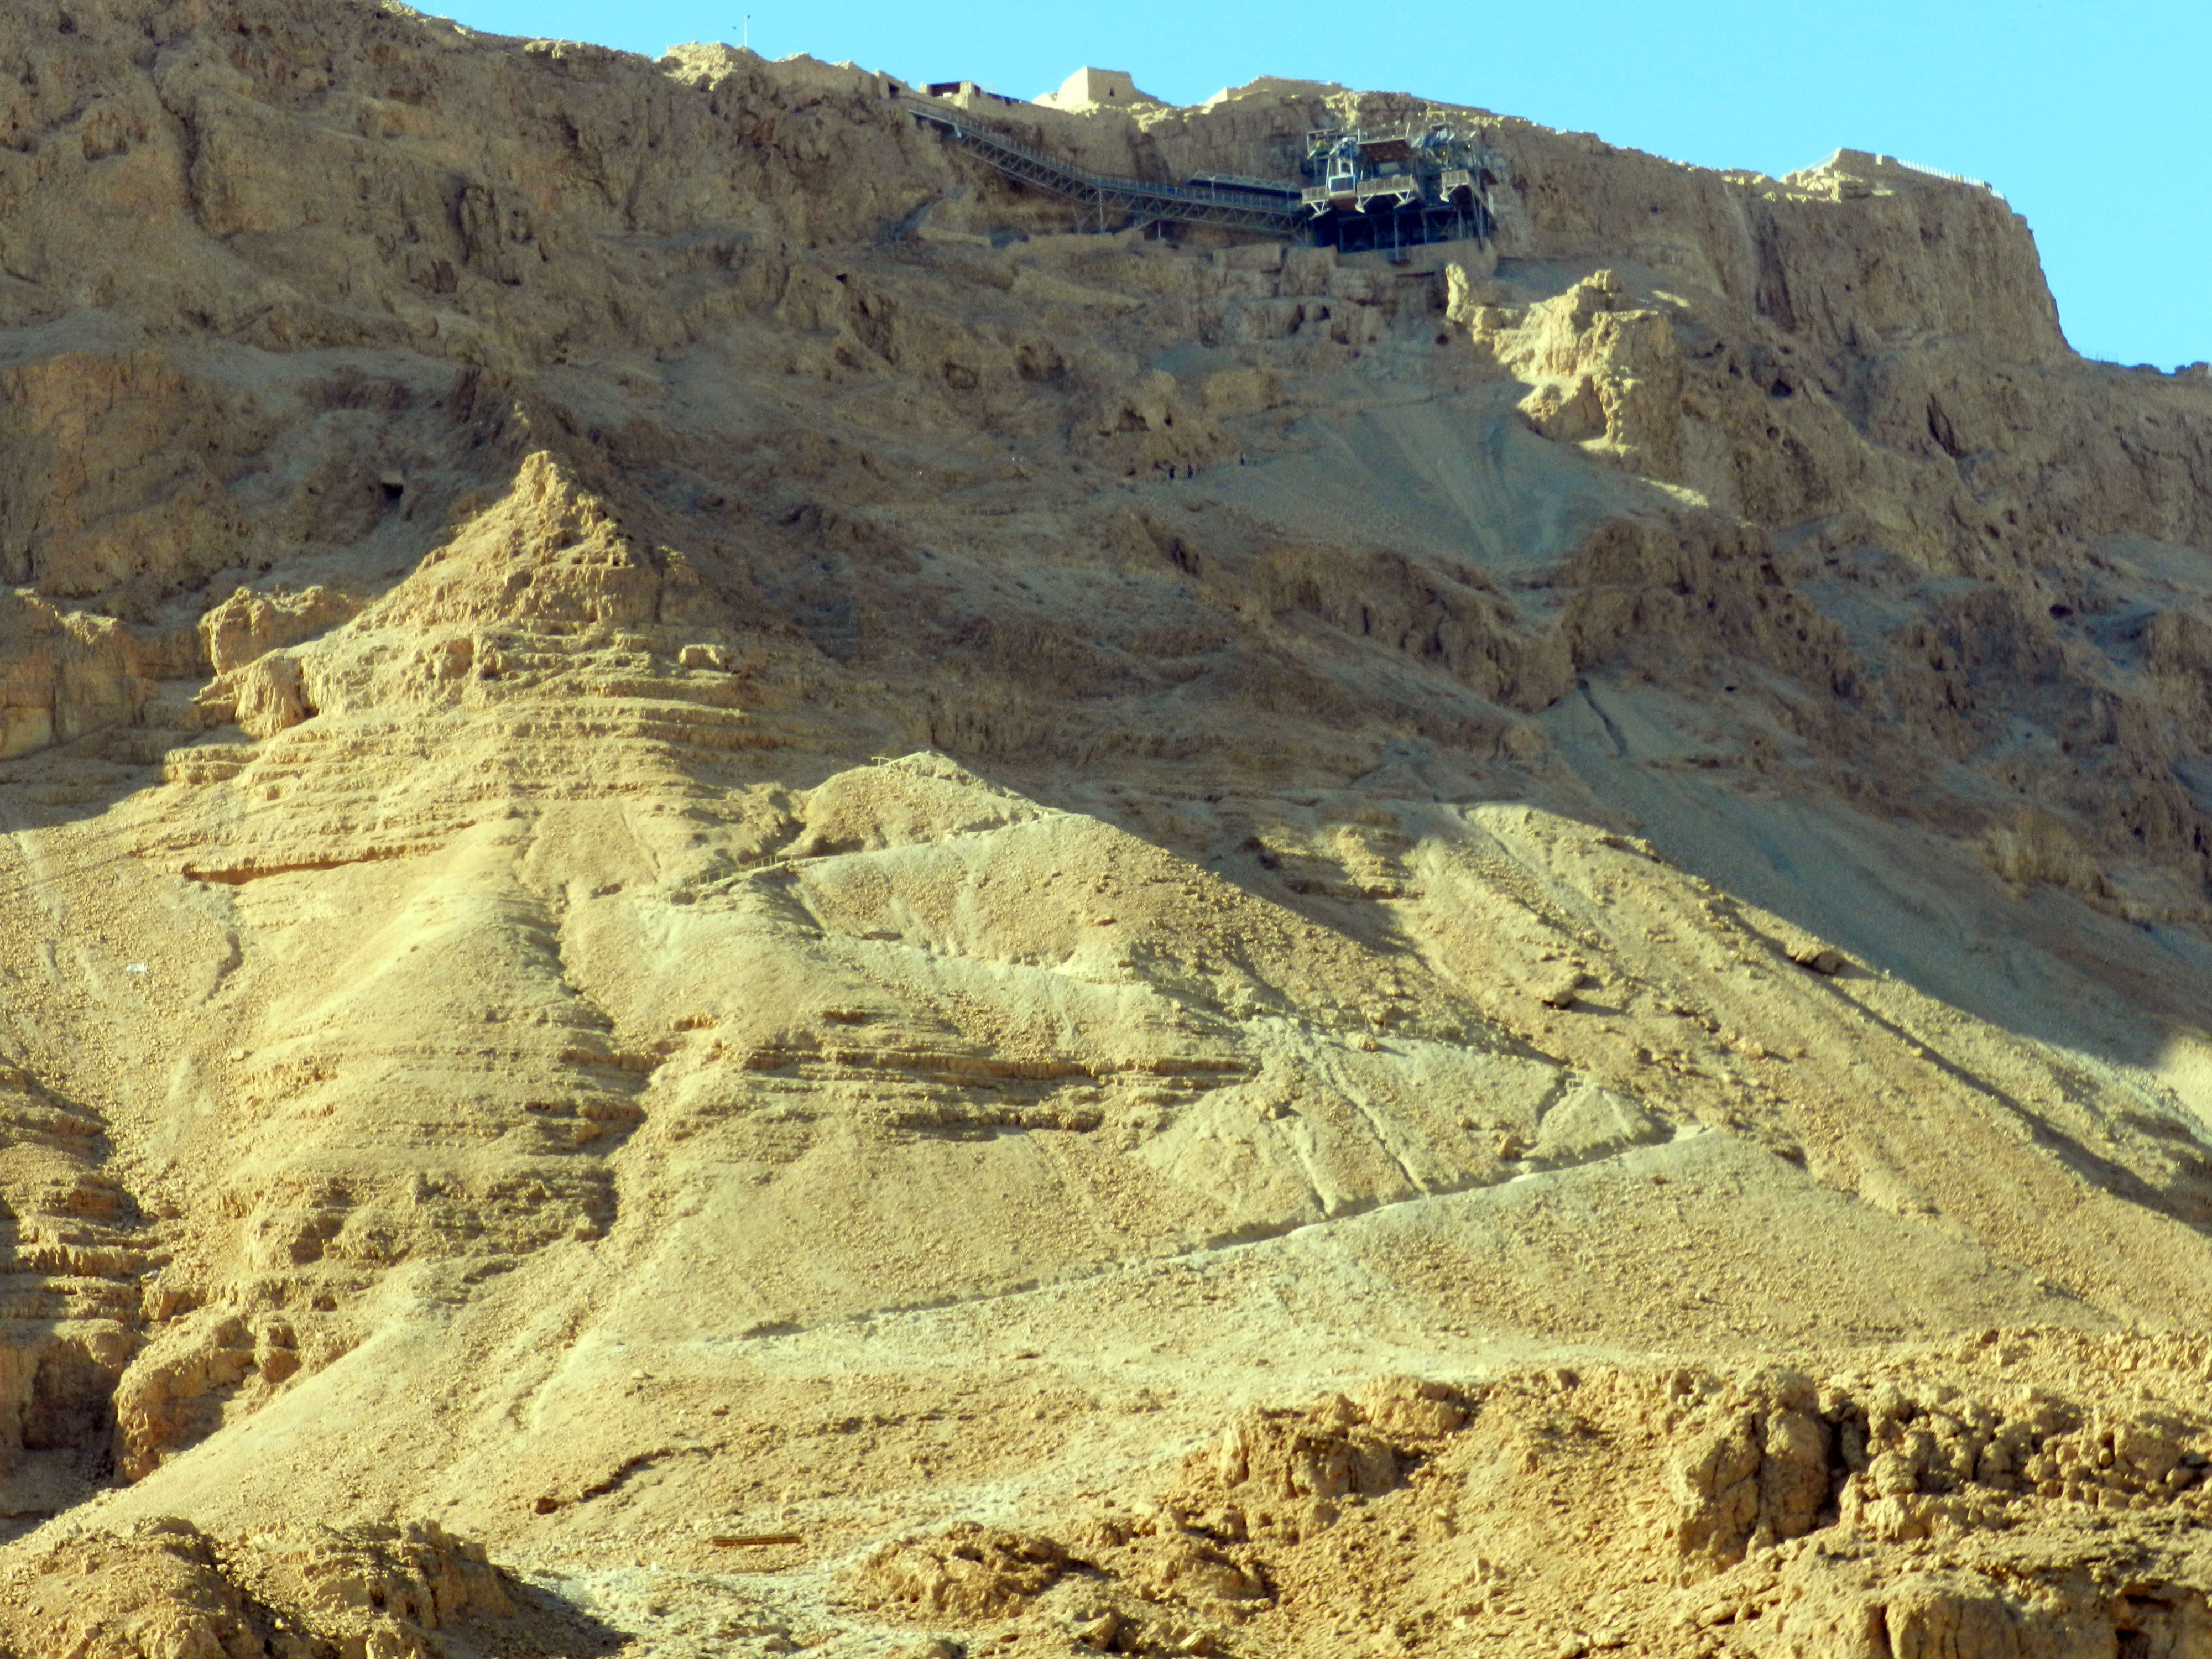 Masada, Negev Desert, Israel